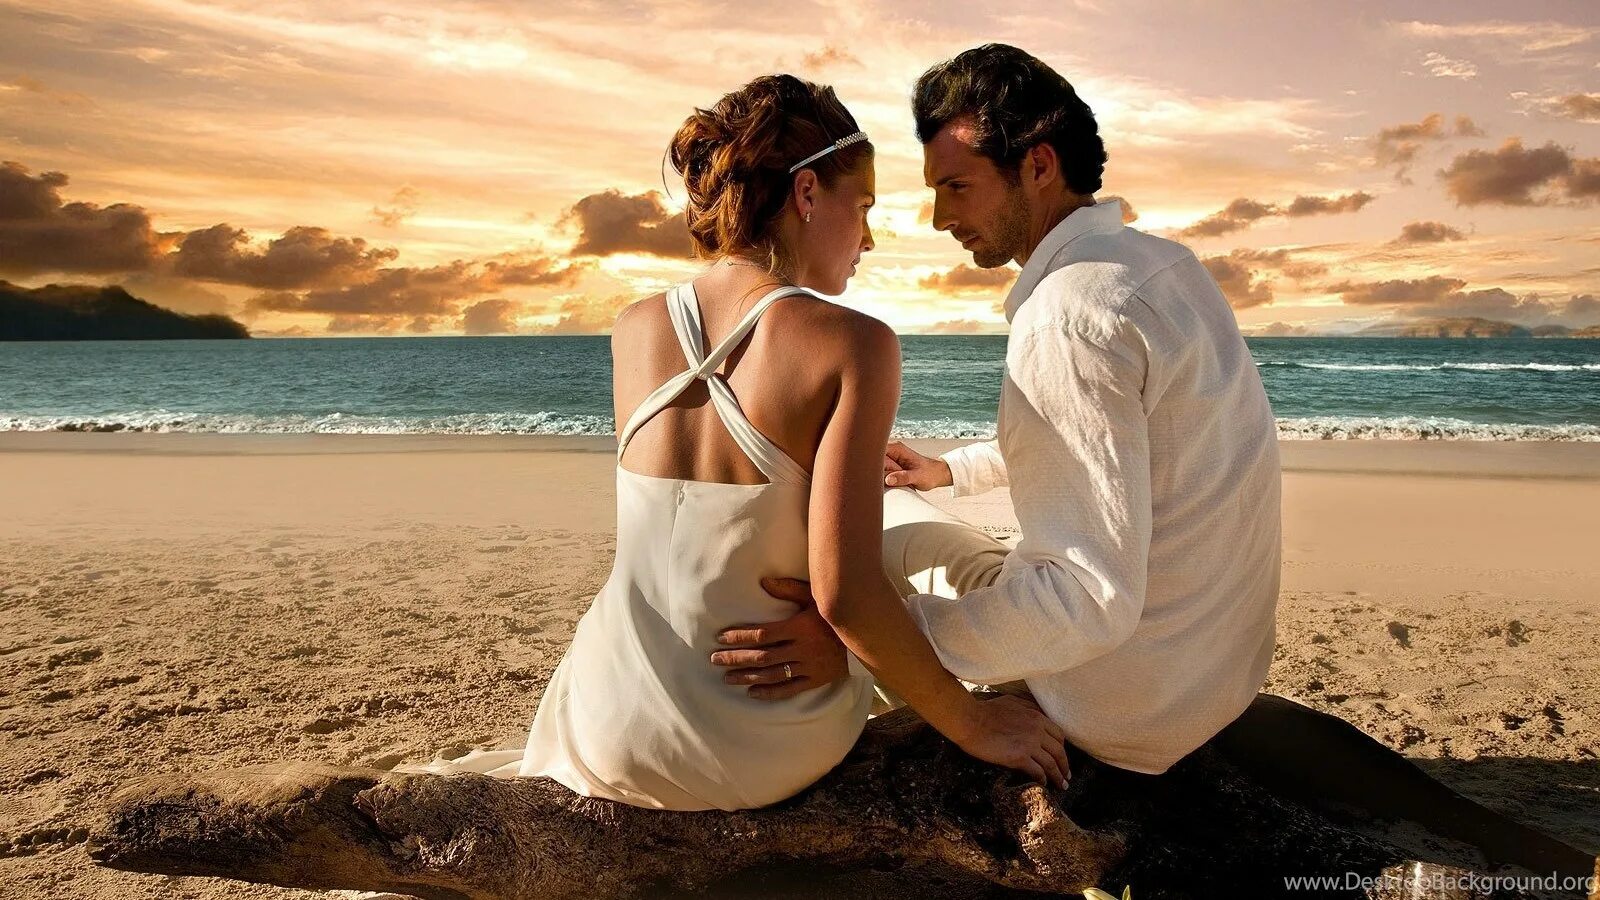 Женщины в любви без регистрации. Счастливые влюбленные. Влюбленные на берегу моря. Парочка на берегу моря. Мужчина и женщина.